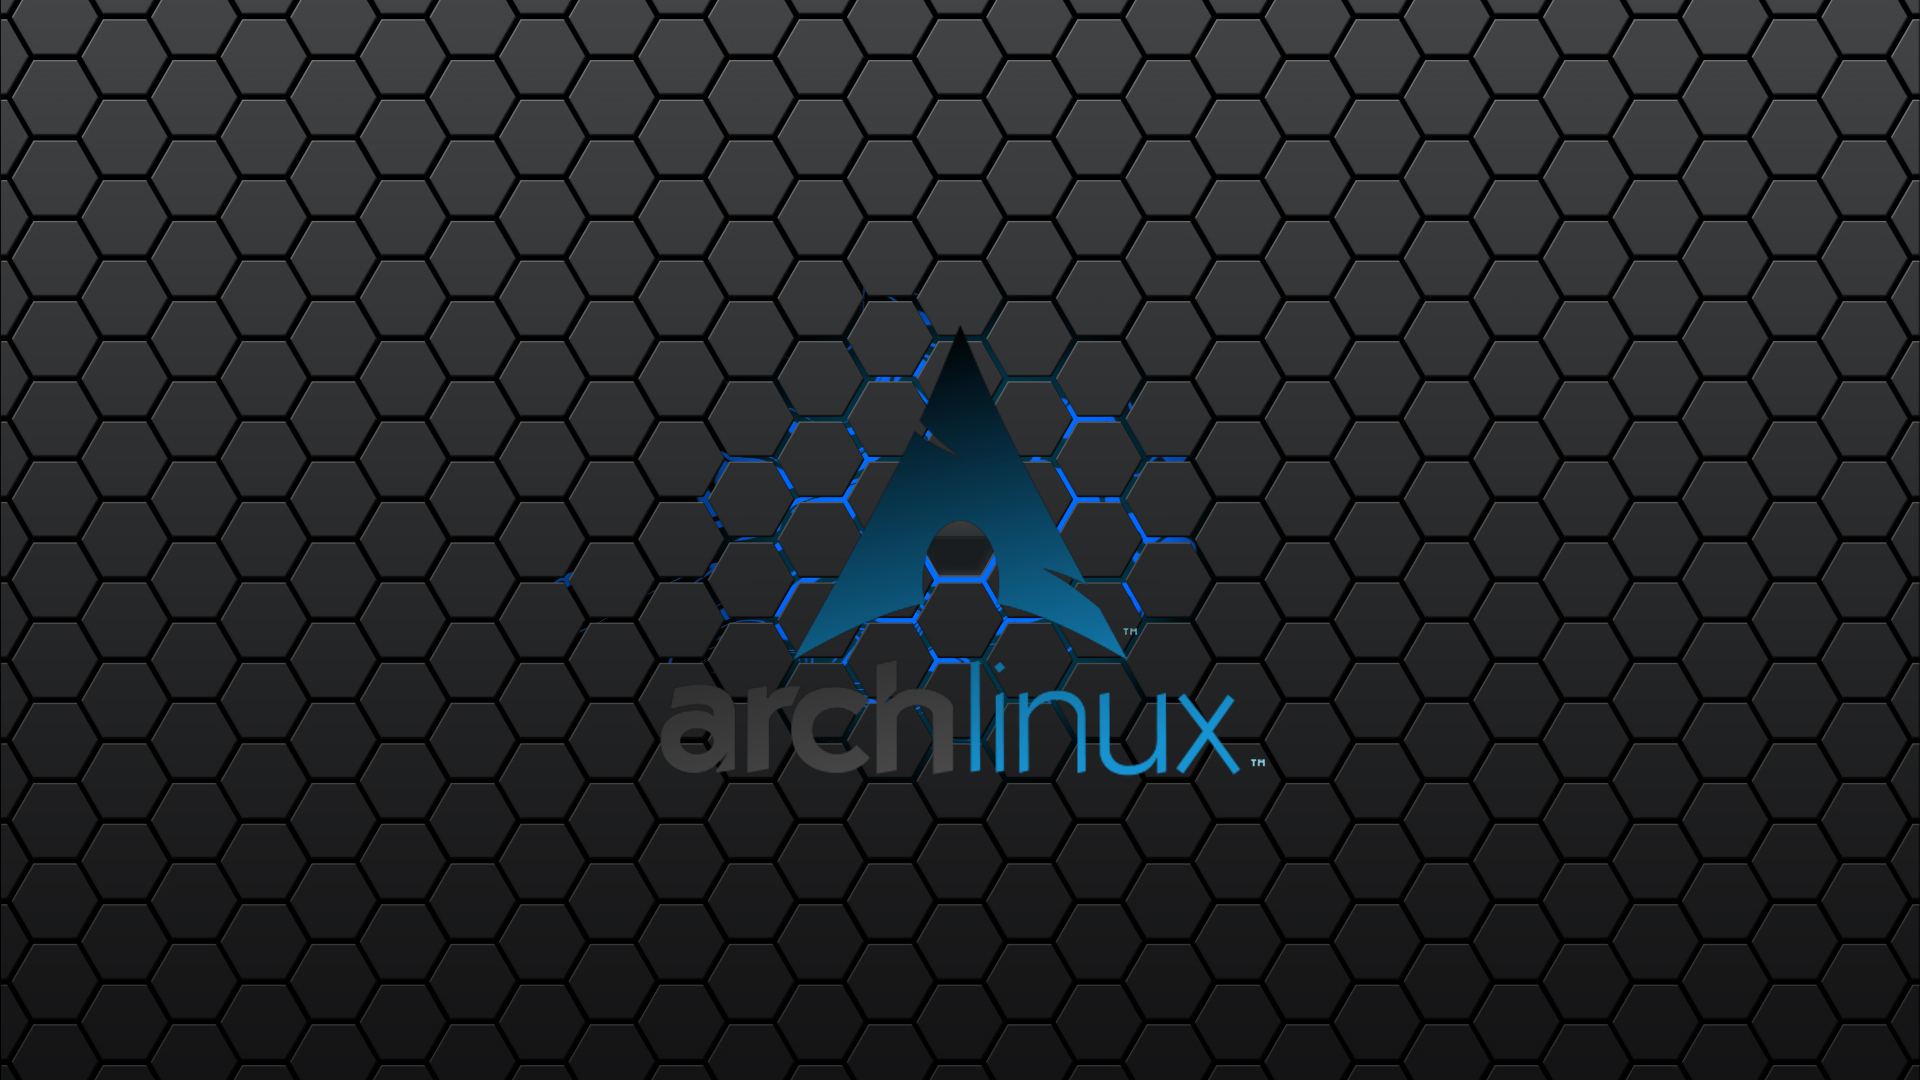 Arch Linux Wallpaper - một trong những bản phân phối Linux được yêu thích nhất tại đây là hình nền của nó. Xem hình ảnh để tìm hiểu về sức mạnh của Arch Linux và thỏa mãn đam mê của mình với bản phân phối Linux này.